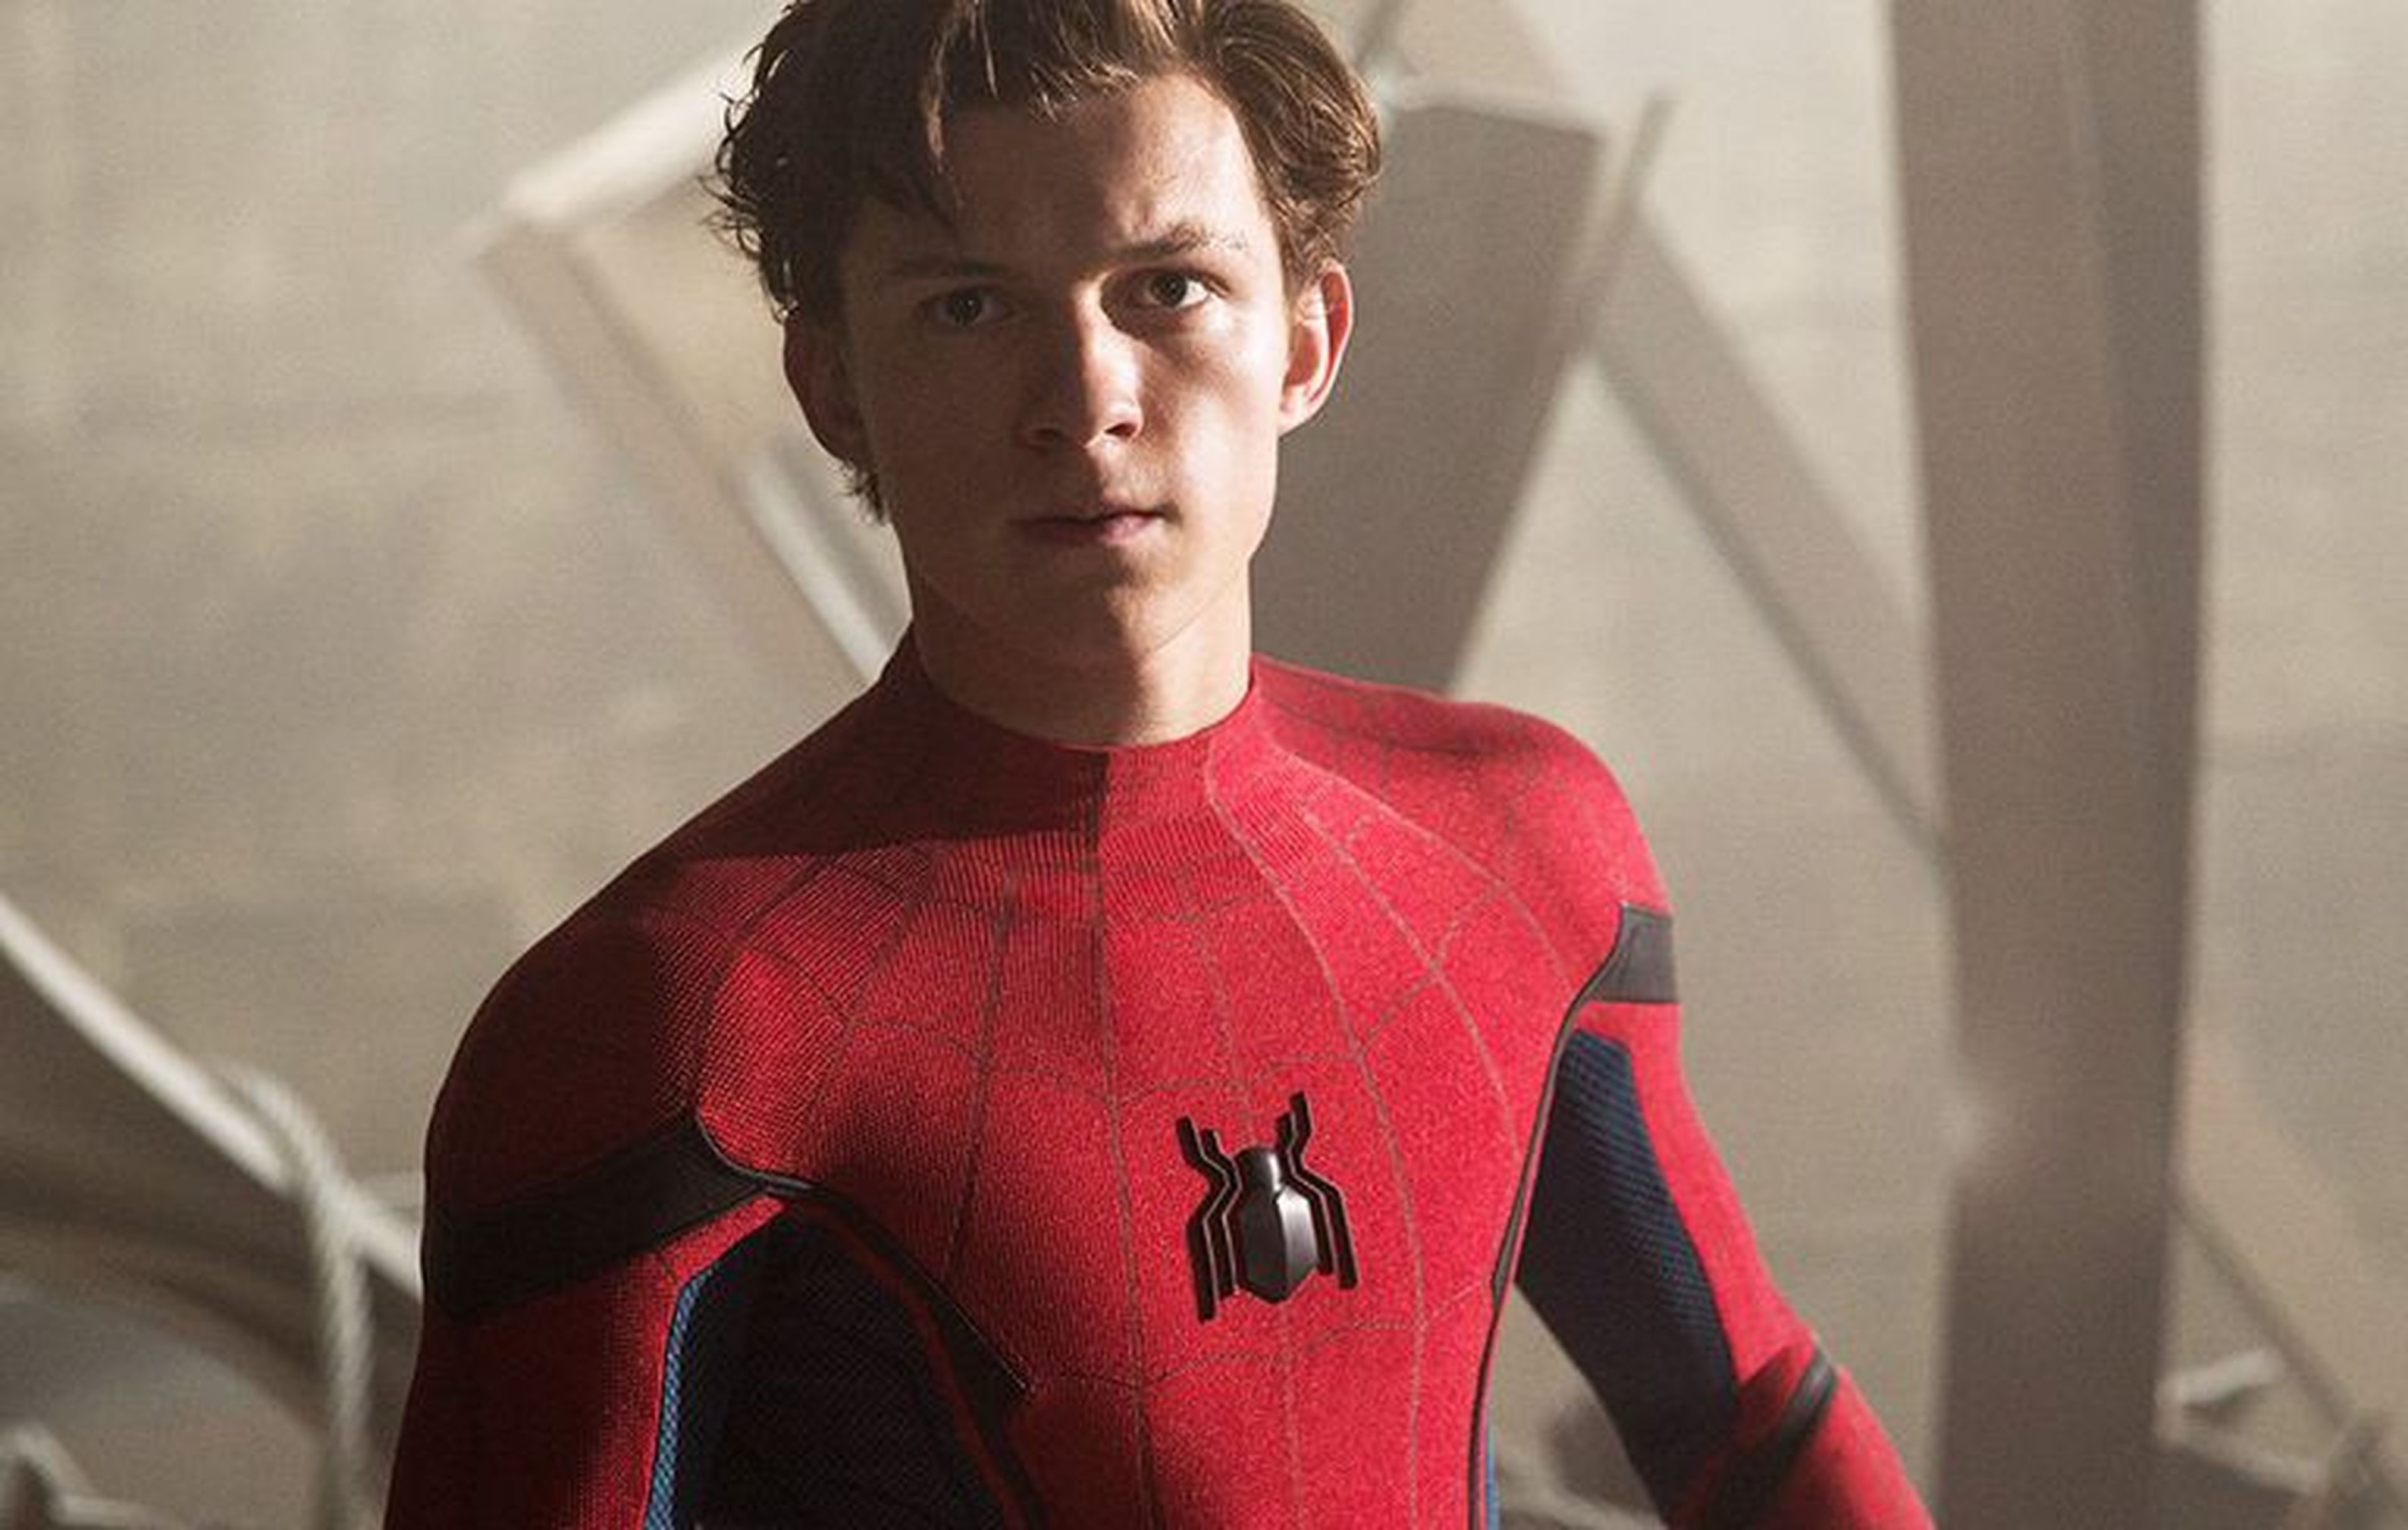 Spider-man / Peter Parker